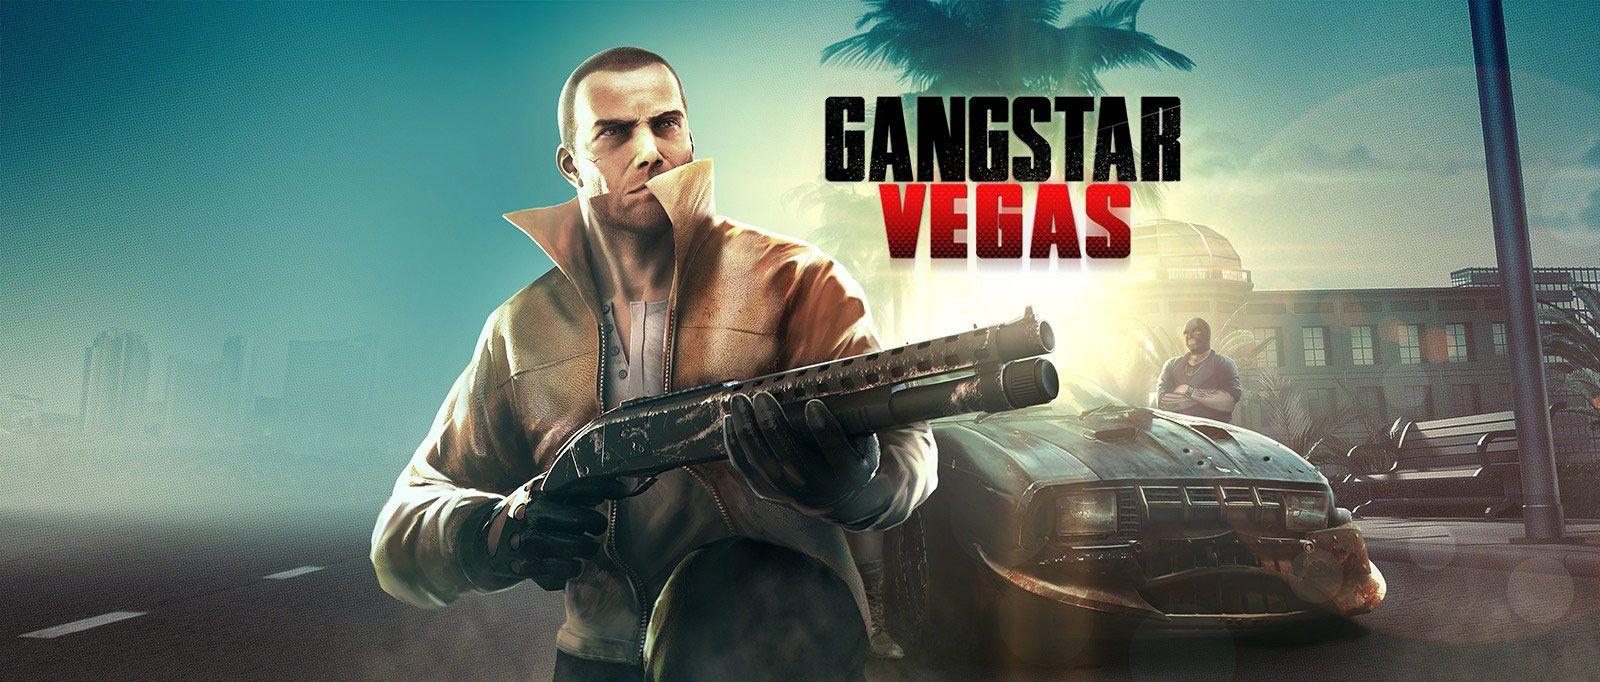 gangstar vegas hack pc download